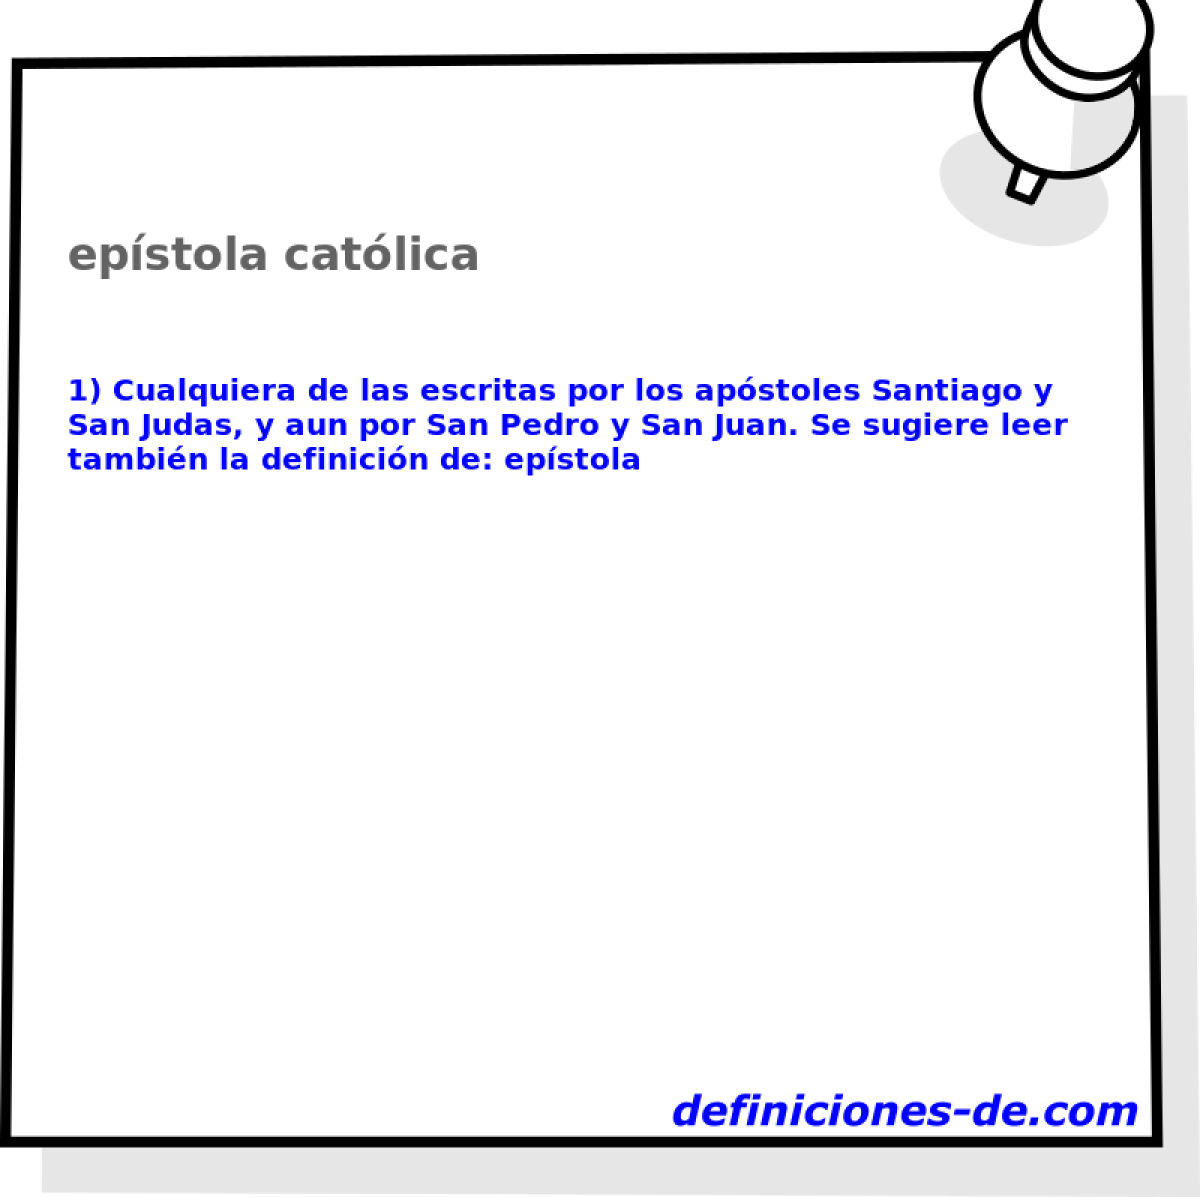 epstola catlica 